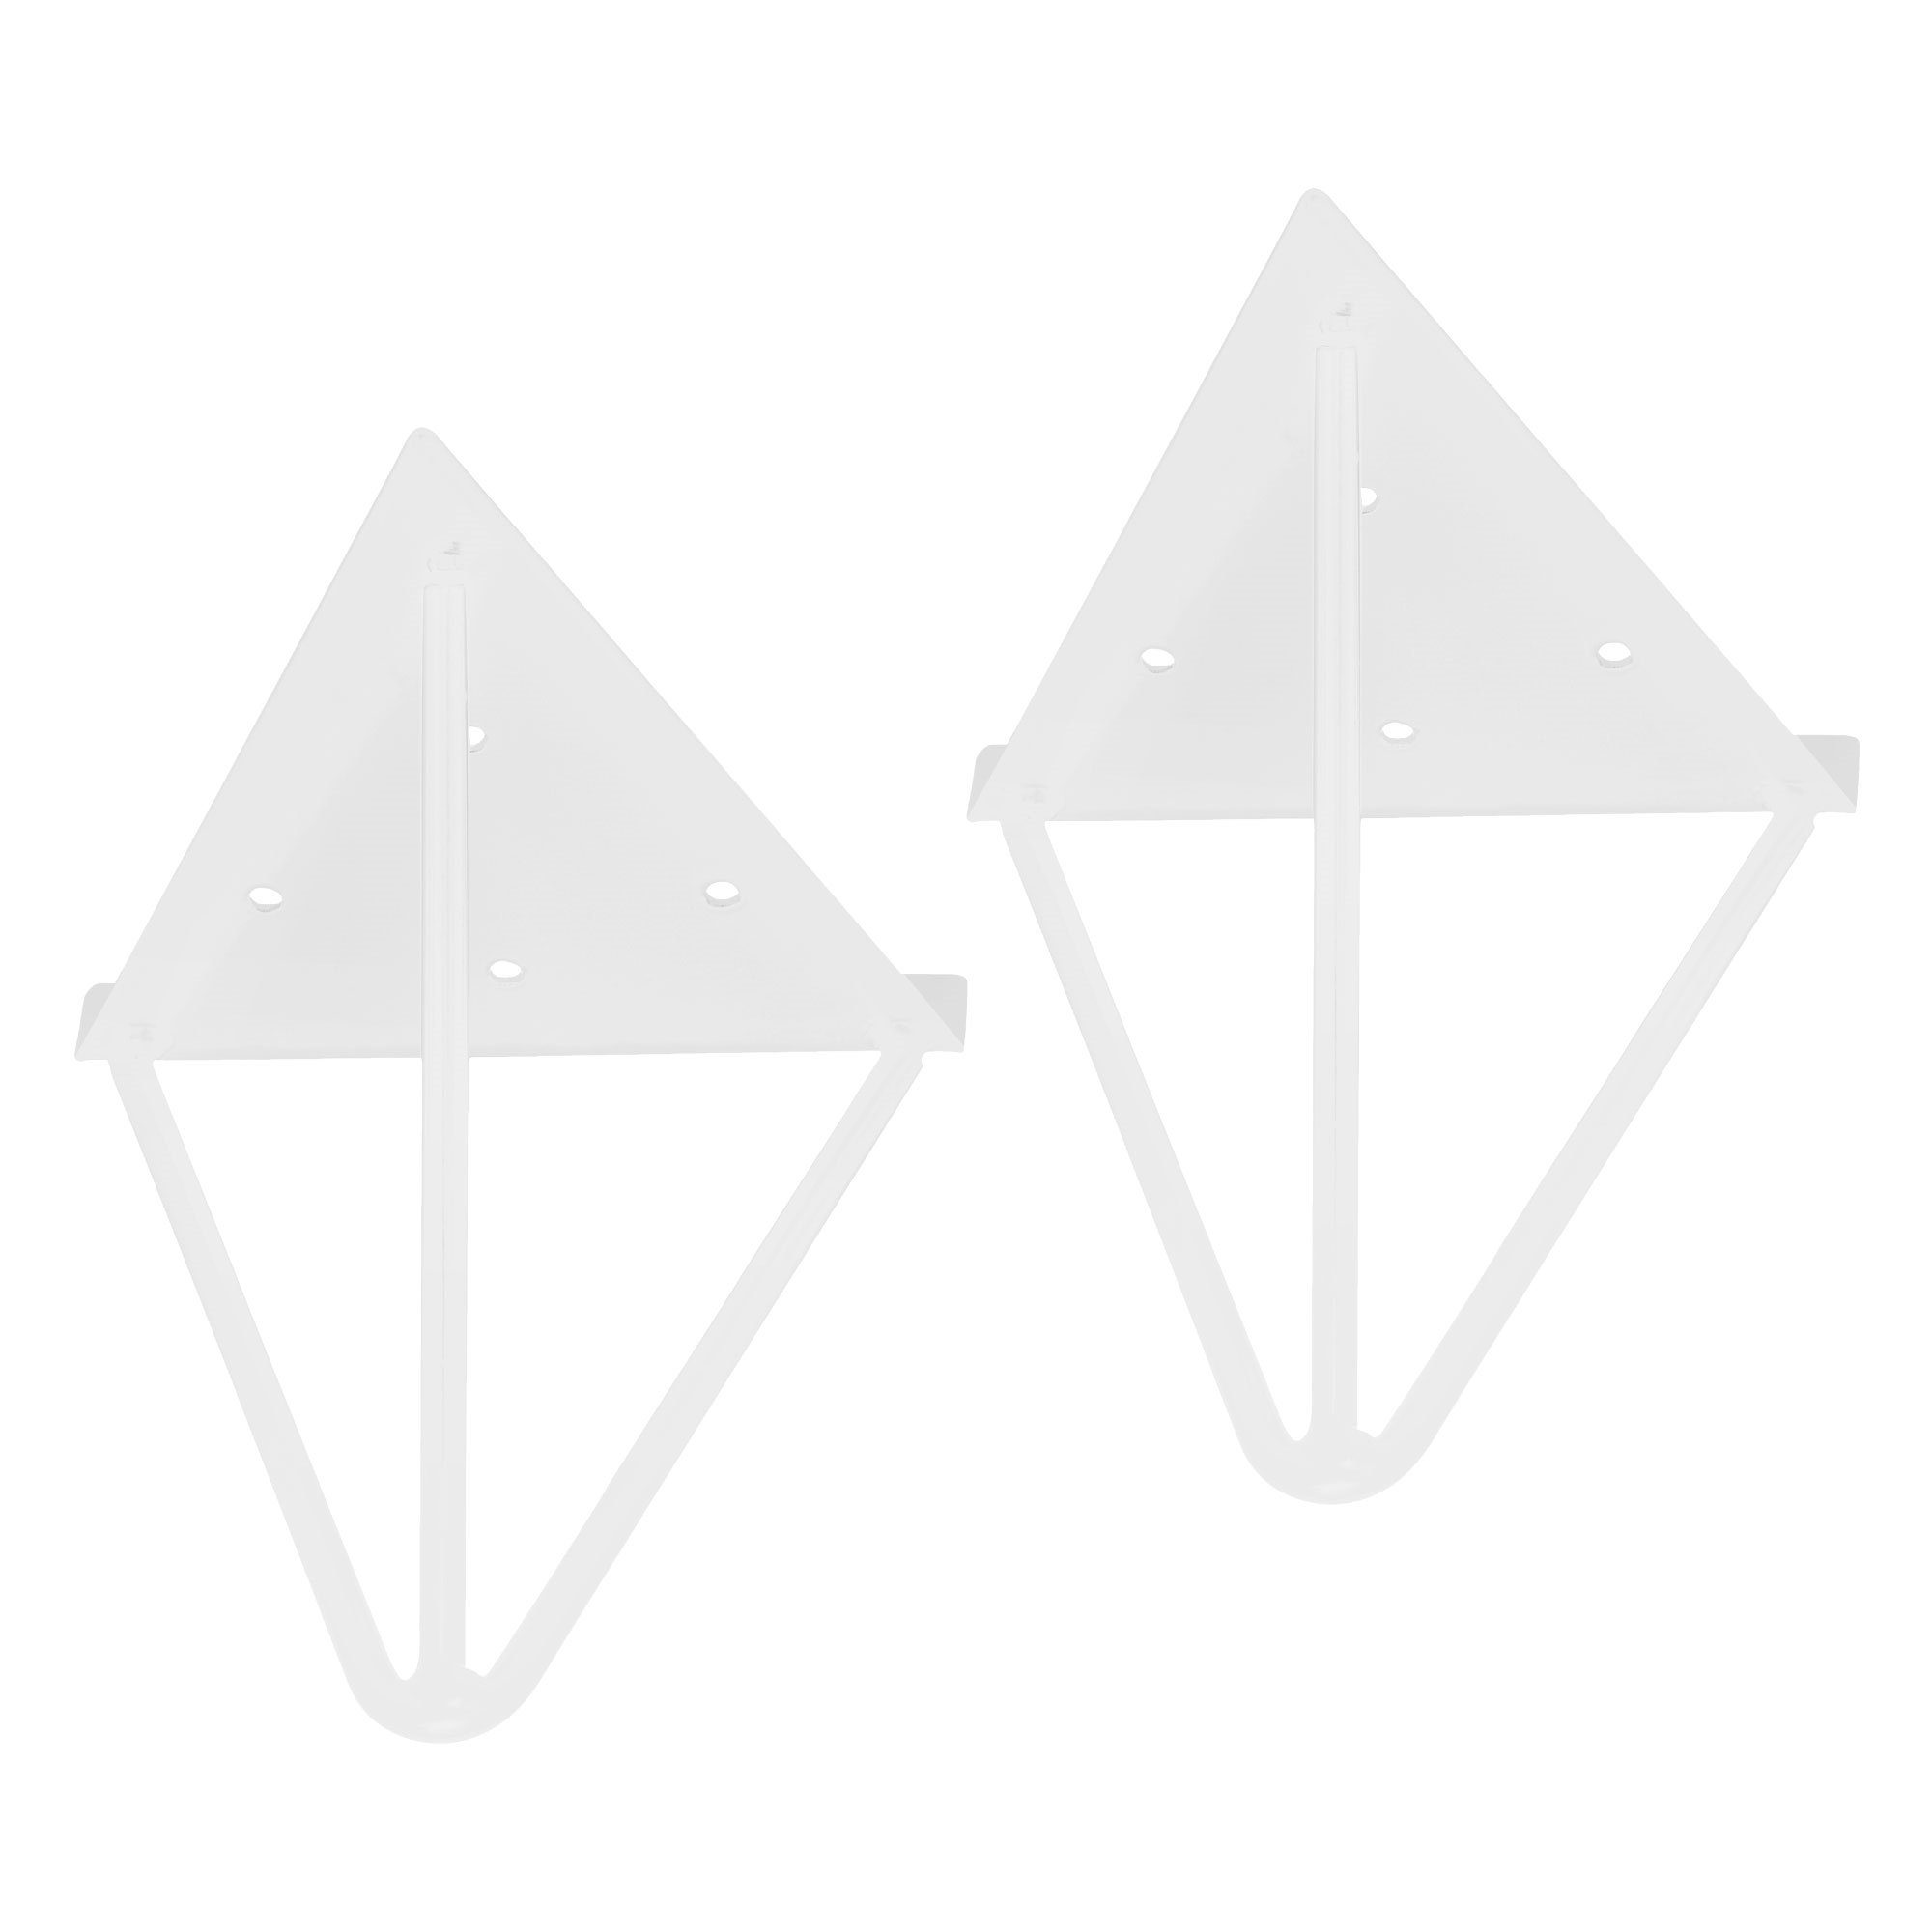 ML-DESIGN Regal Regalhalterung Schwebe Regalwinkel Wandhalterung Prisma Regalträger, 2 Stück 160mm Weiß Metall,Dreieckig Prisma